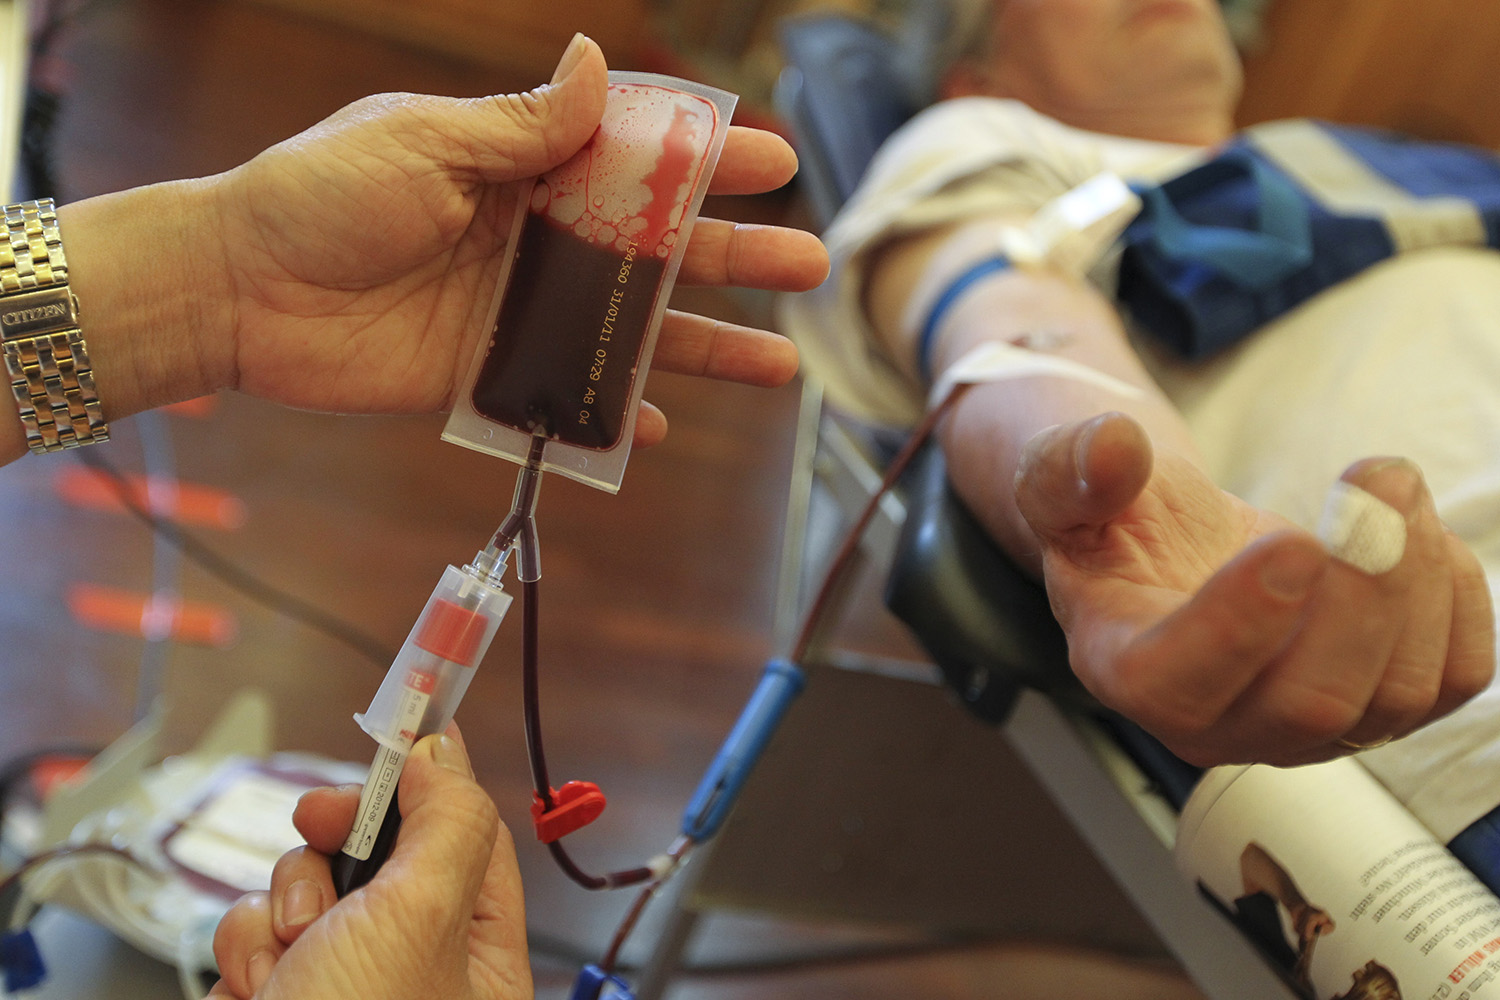 Suecia informa por sms a los donantes cuando su sangre ha sido utilizada